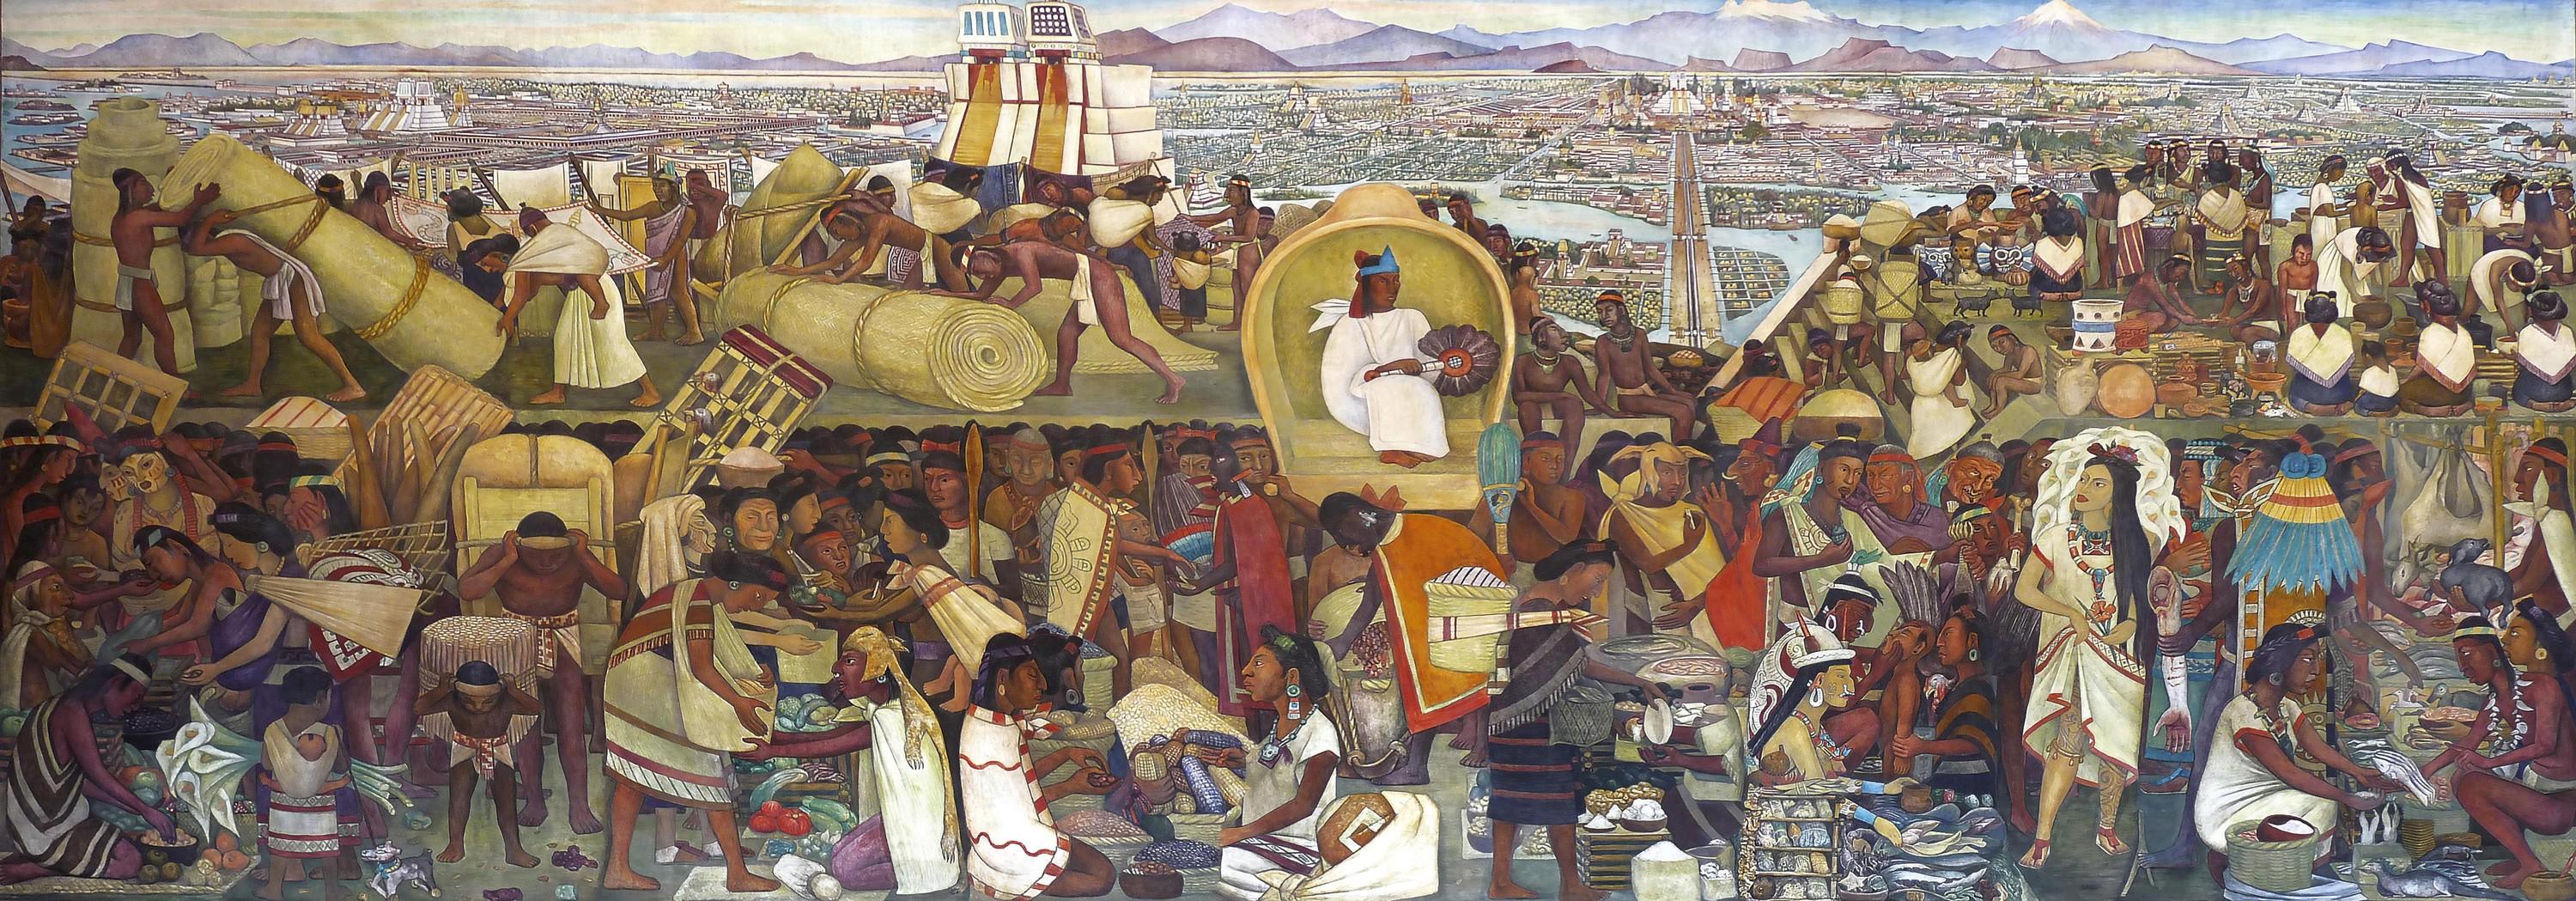 La Grande Cité de Tenochtitlán